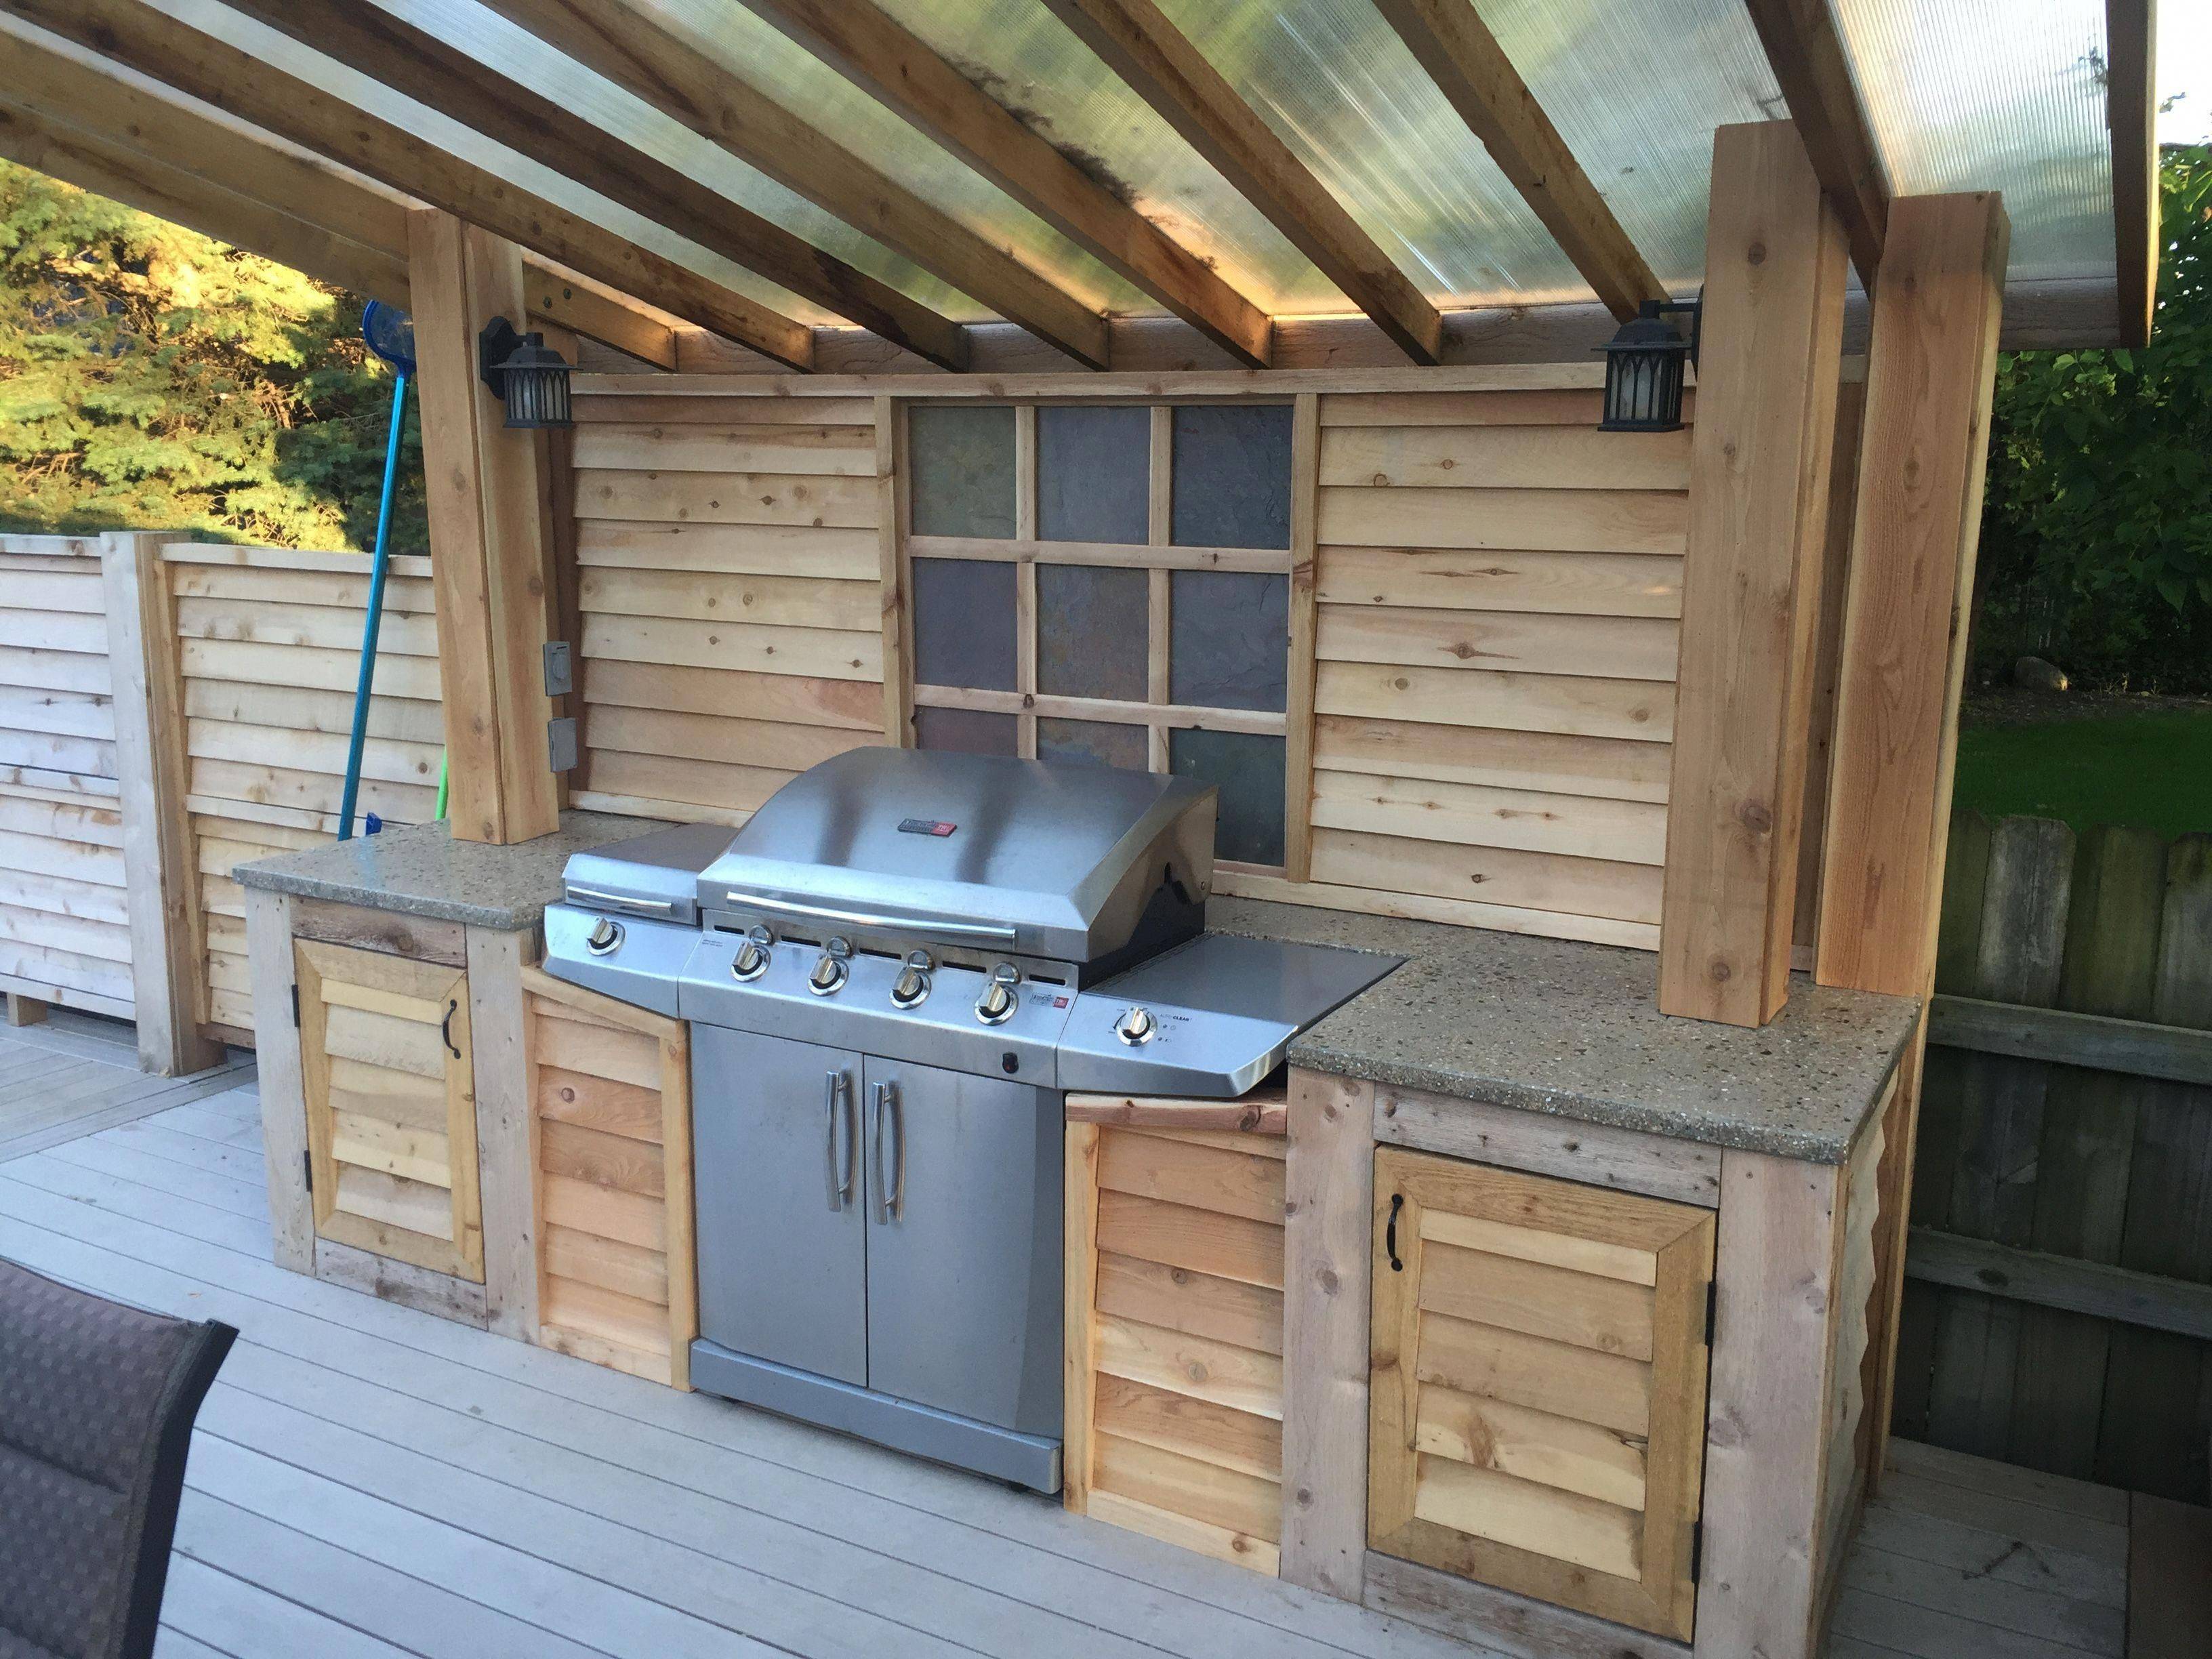 Летняя кухня на даче - виды и проекты для постройки своими руками
летняя кухня на даче - виды и проекты для постройки своими руками